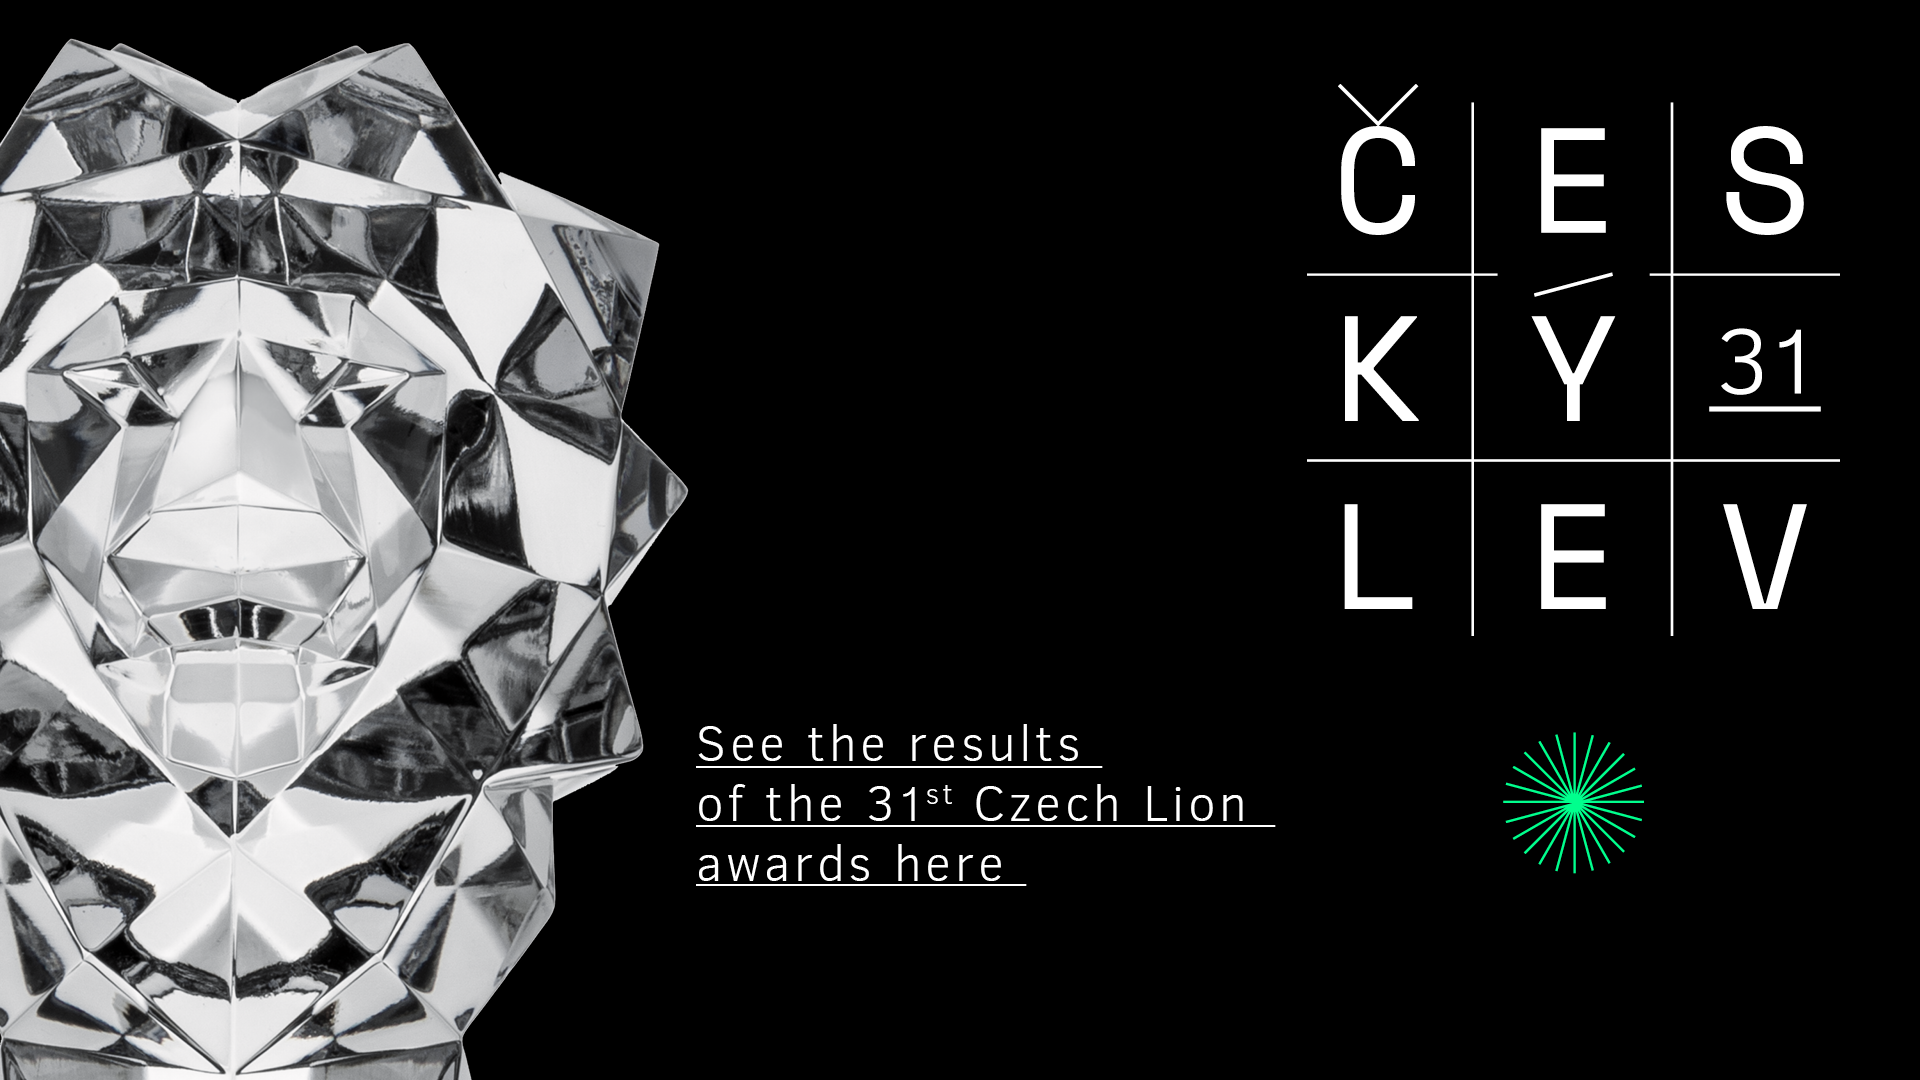 Czech Lion Award winners